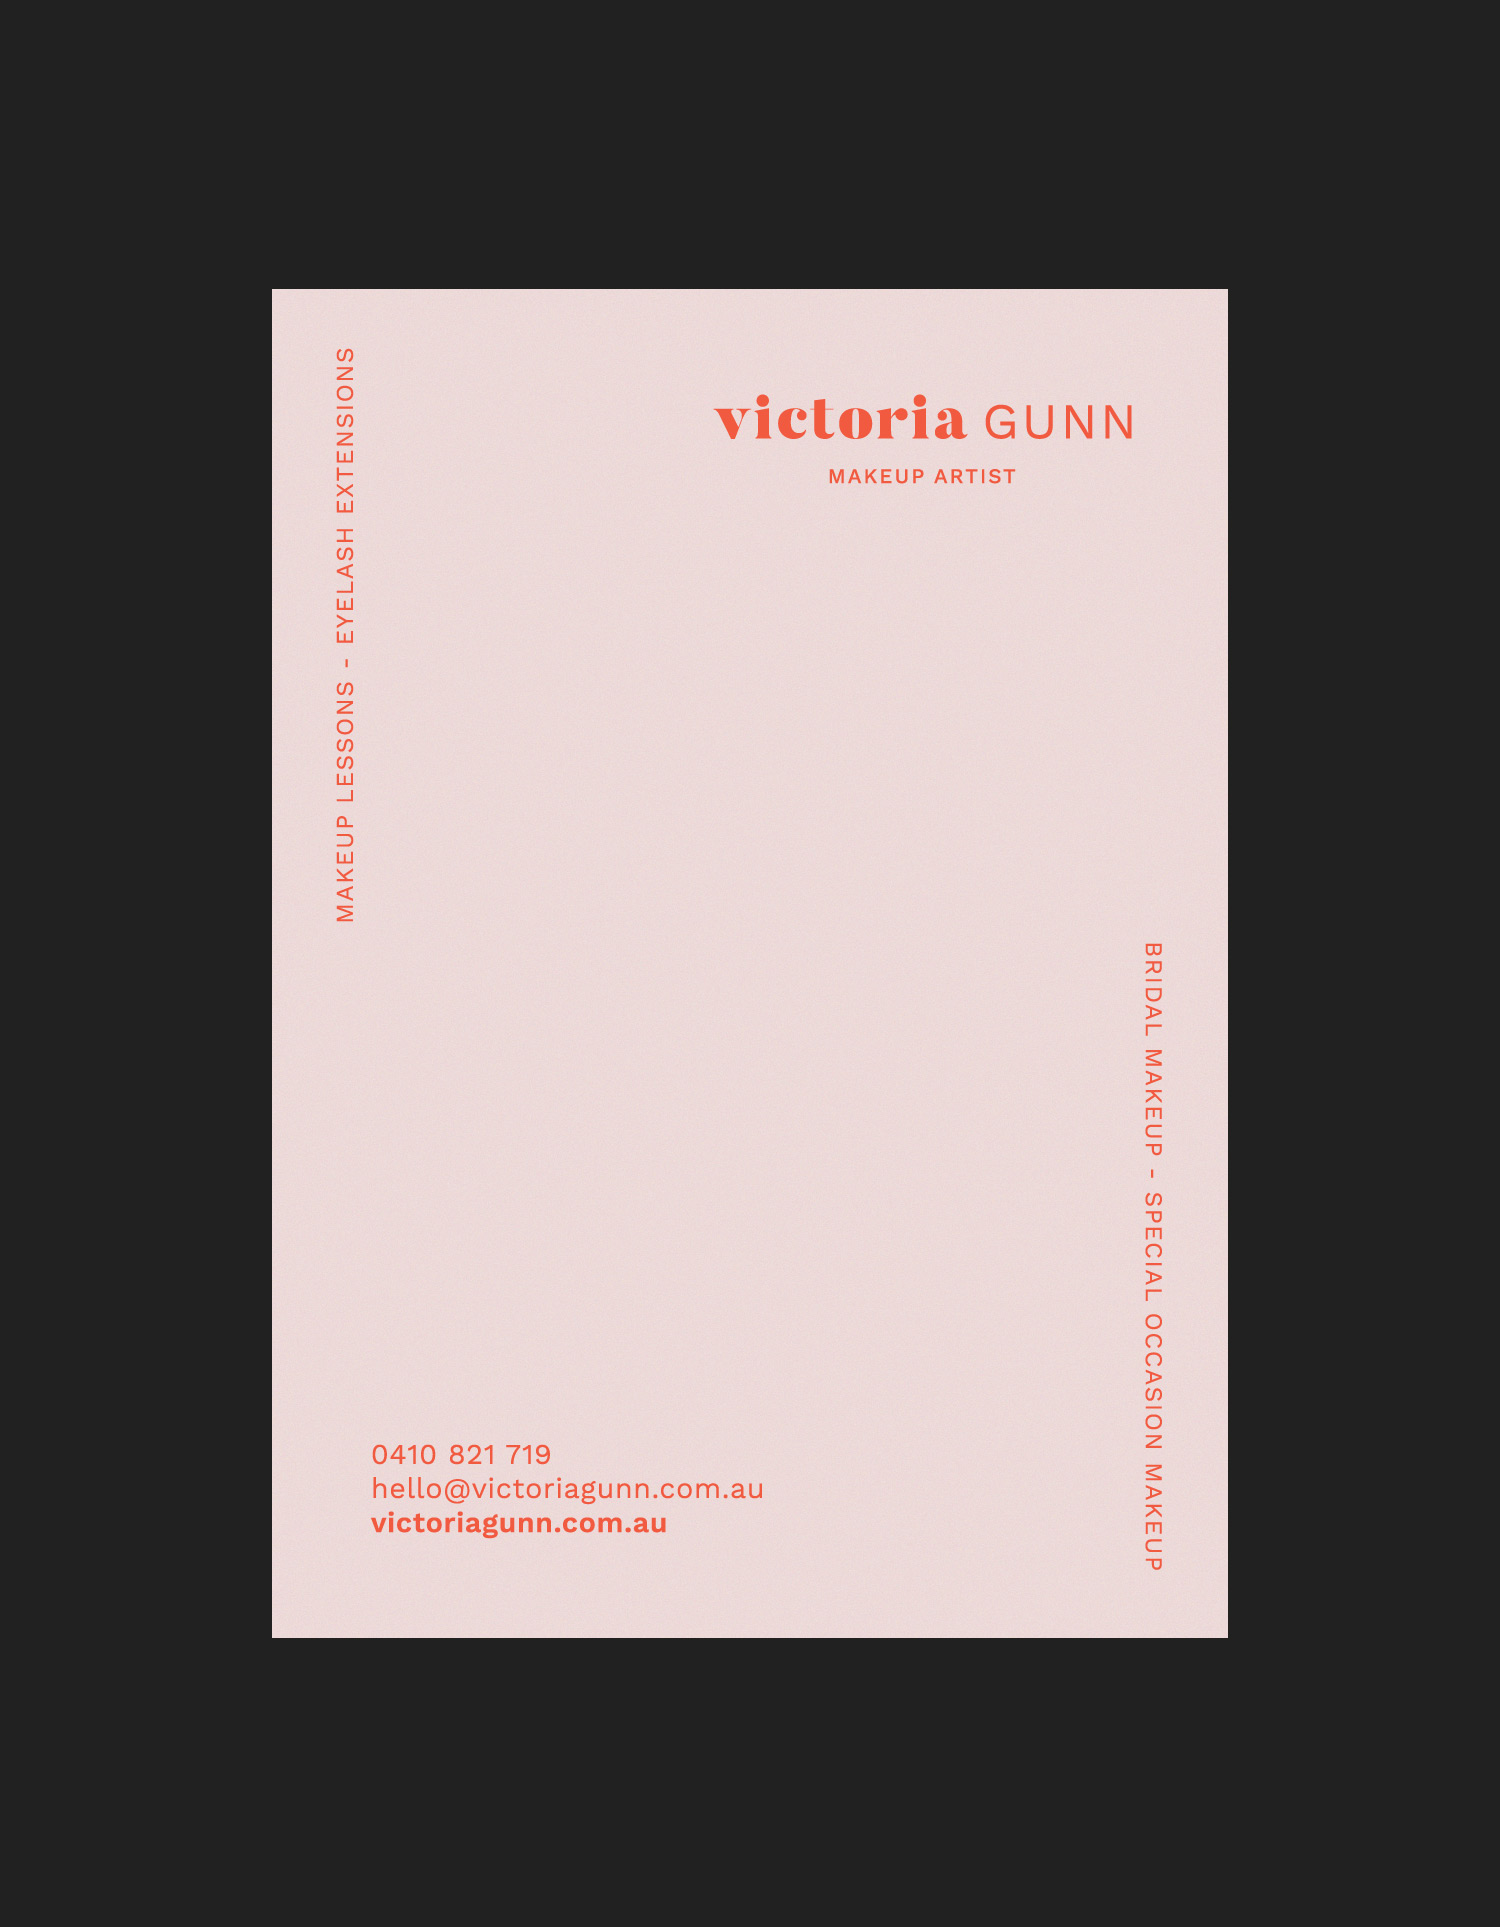 Victoria Gunn postcard design